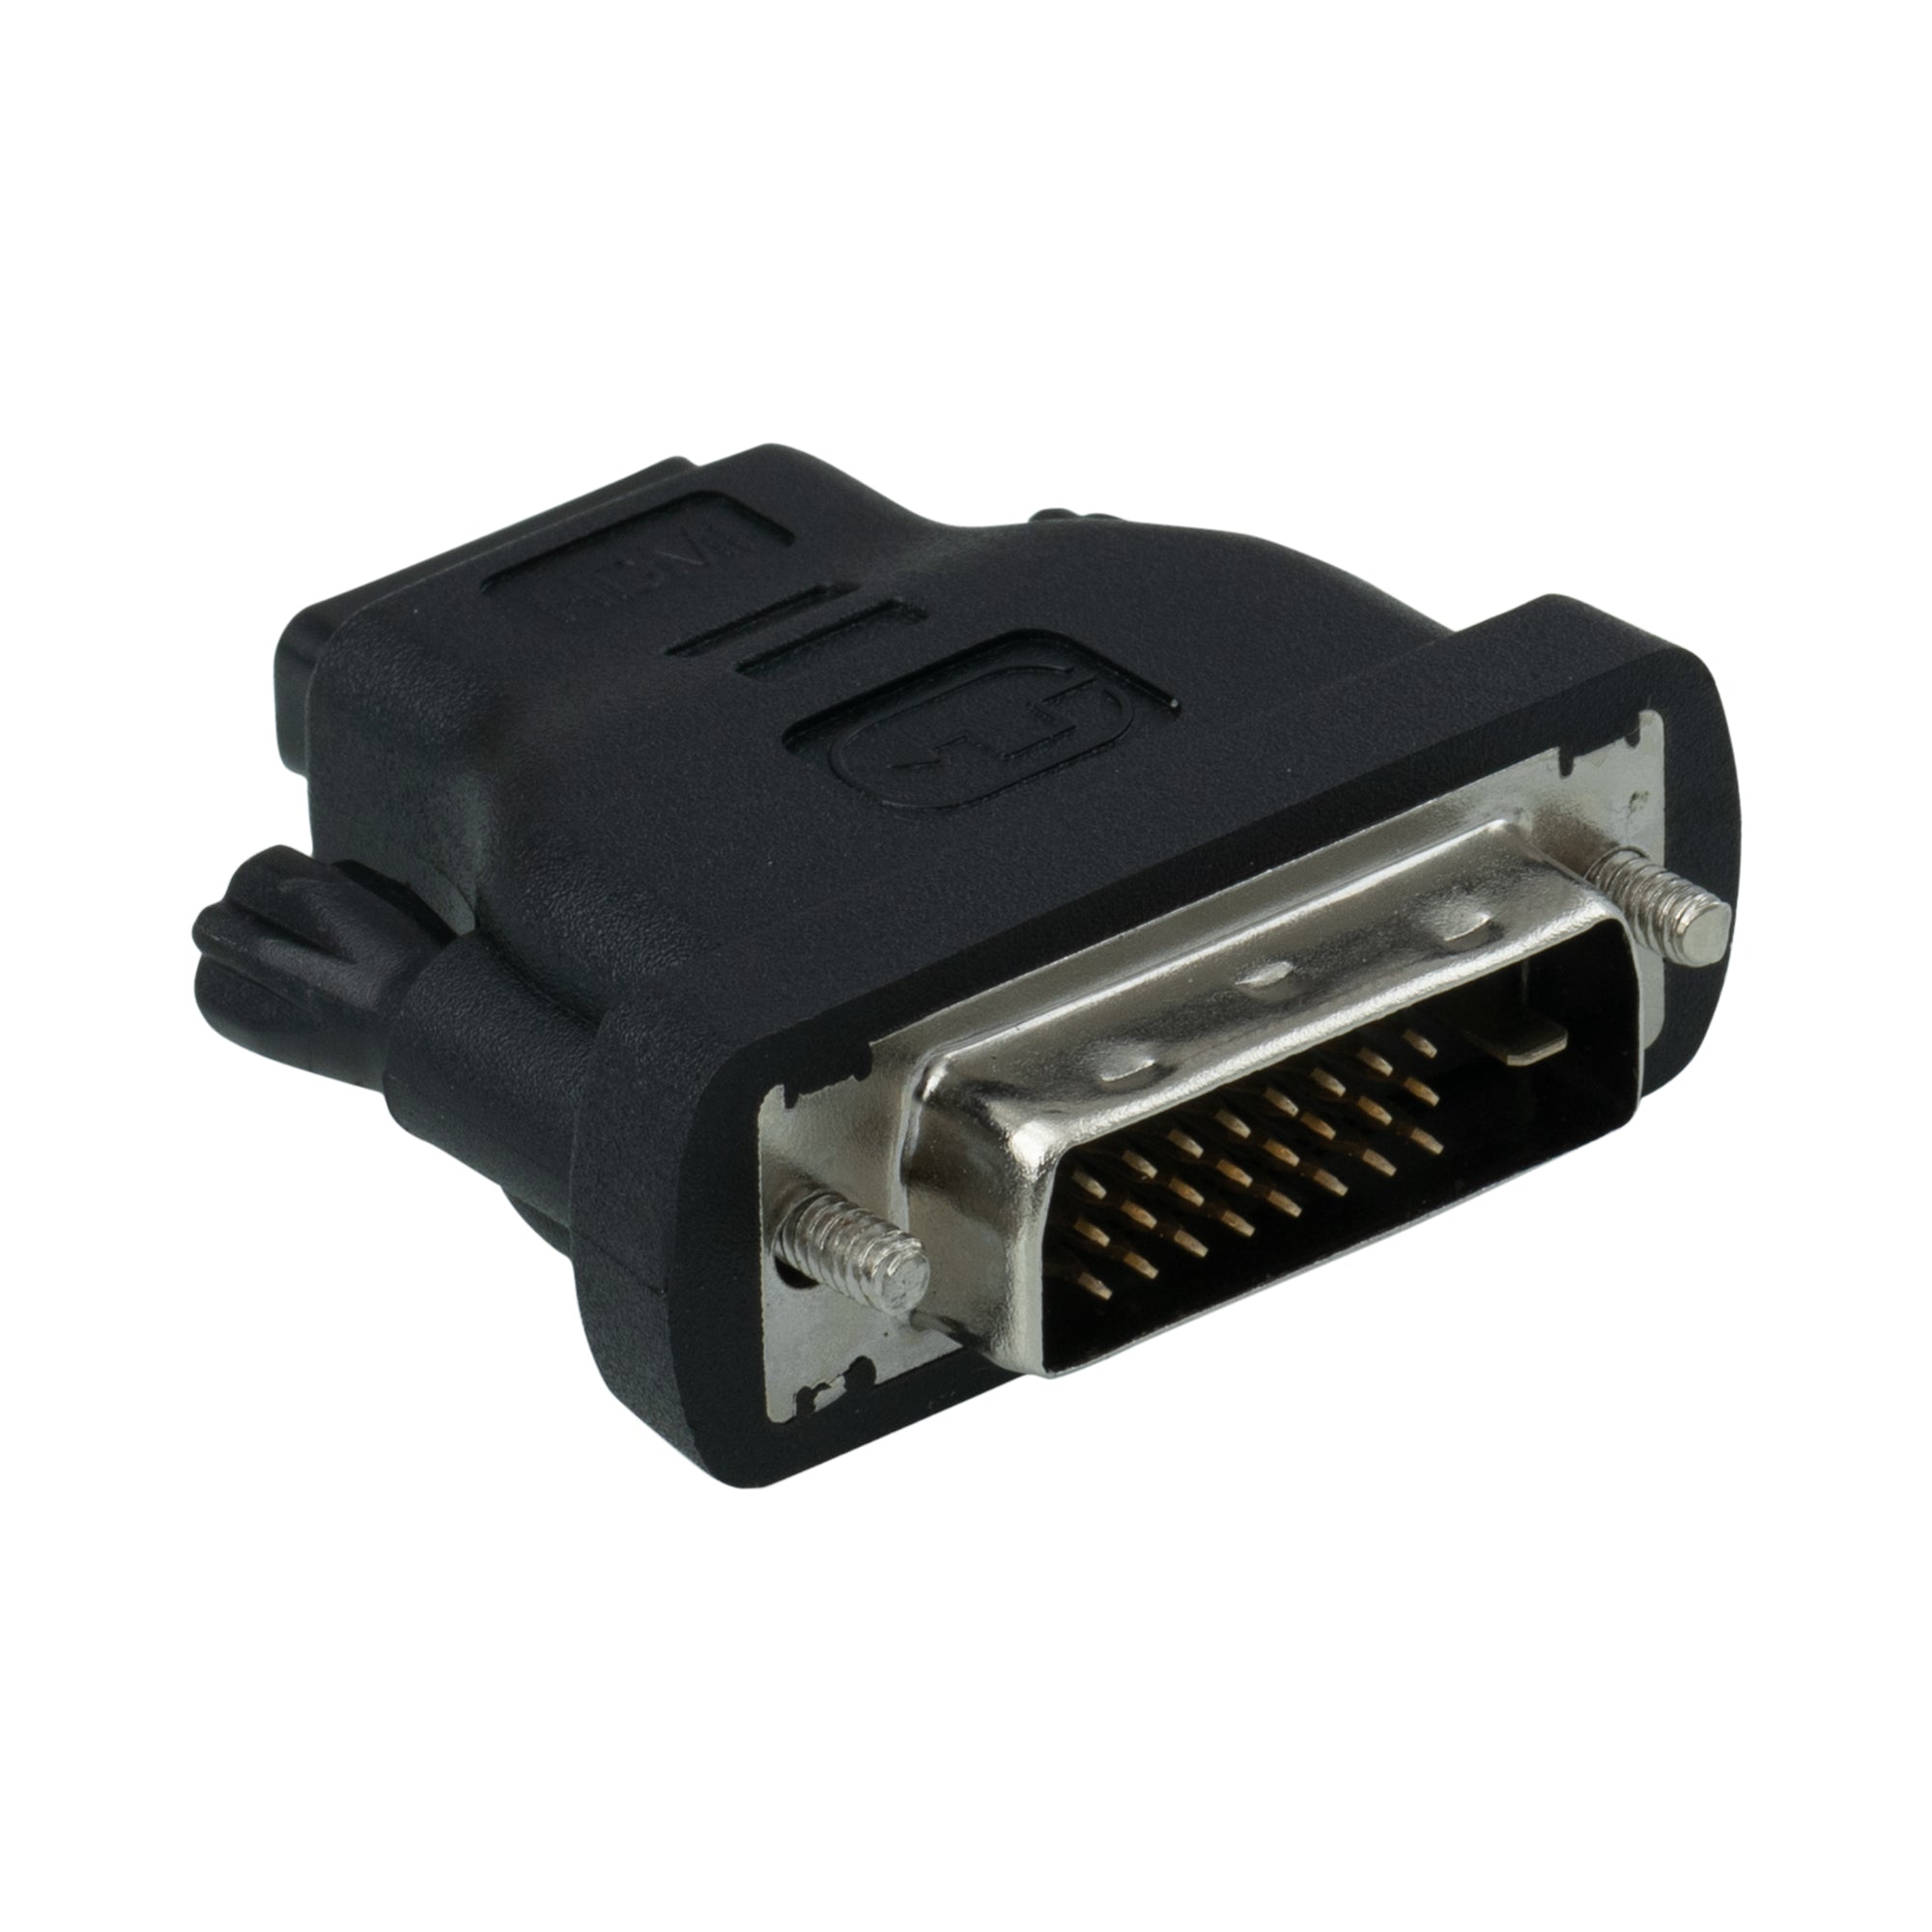 Male DVI-D to Female HDMI AV Adaptor